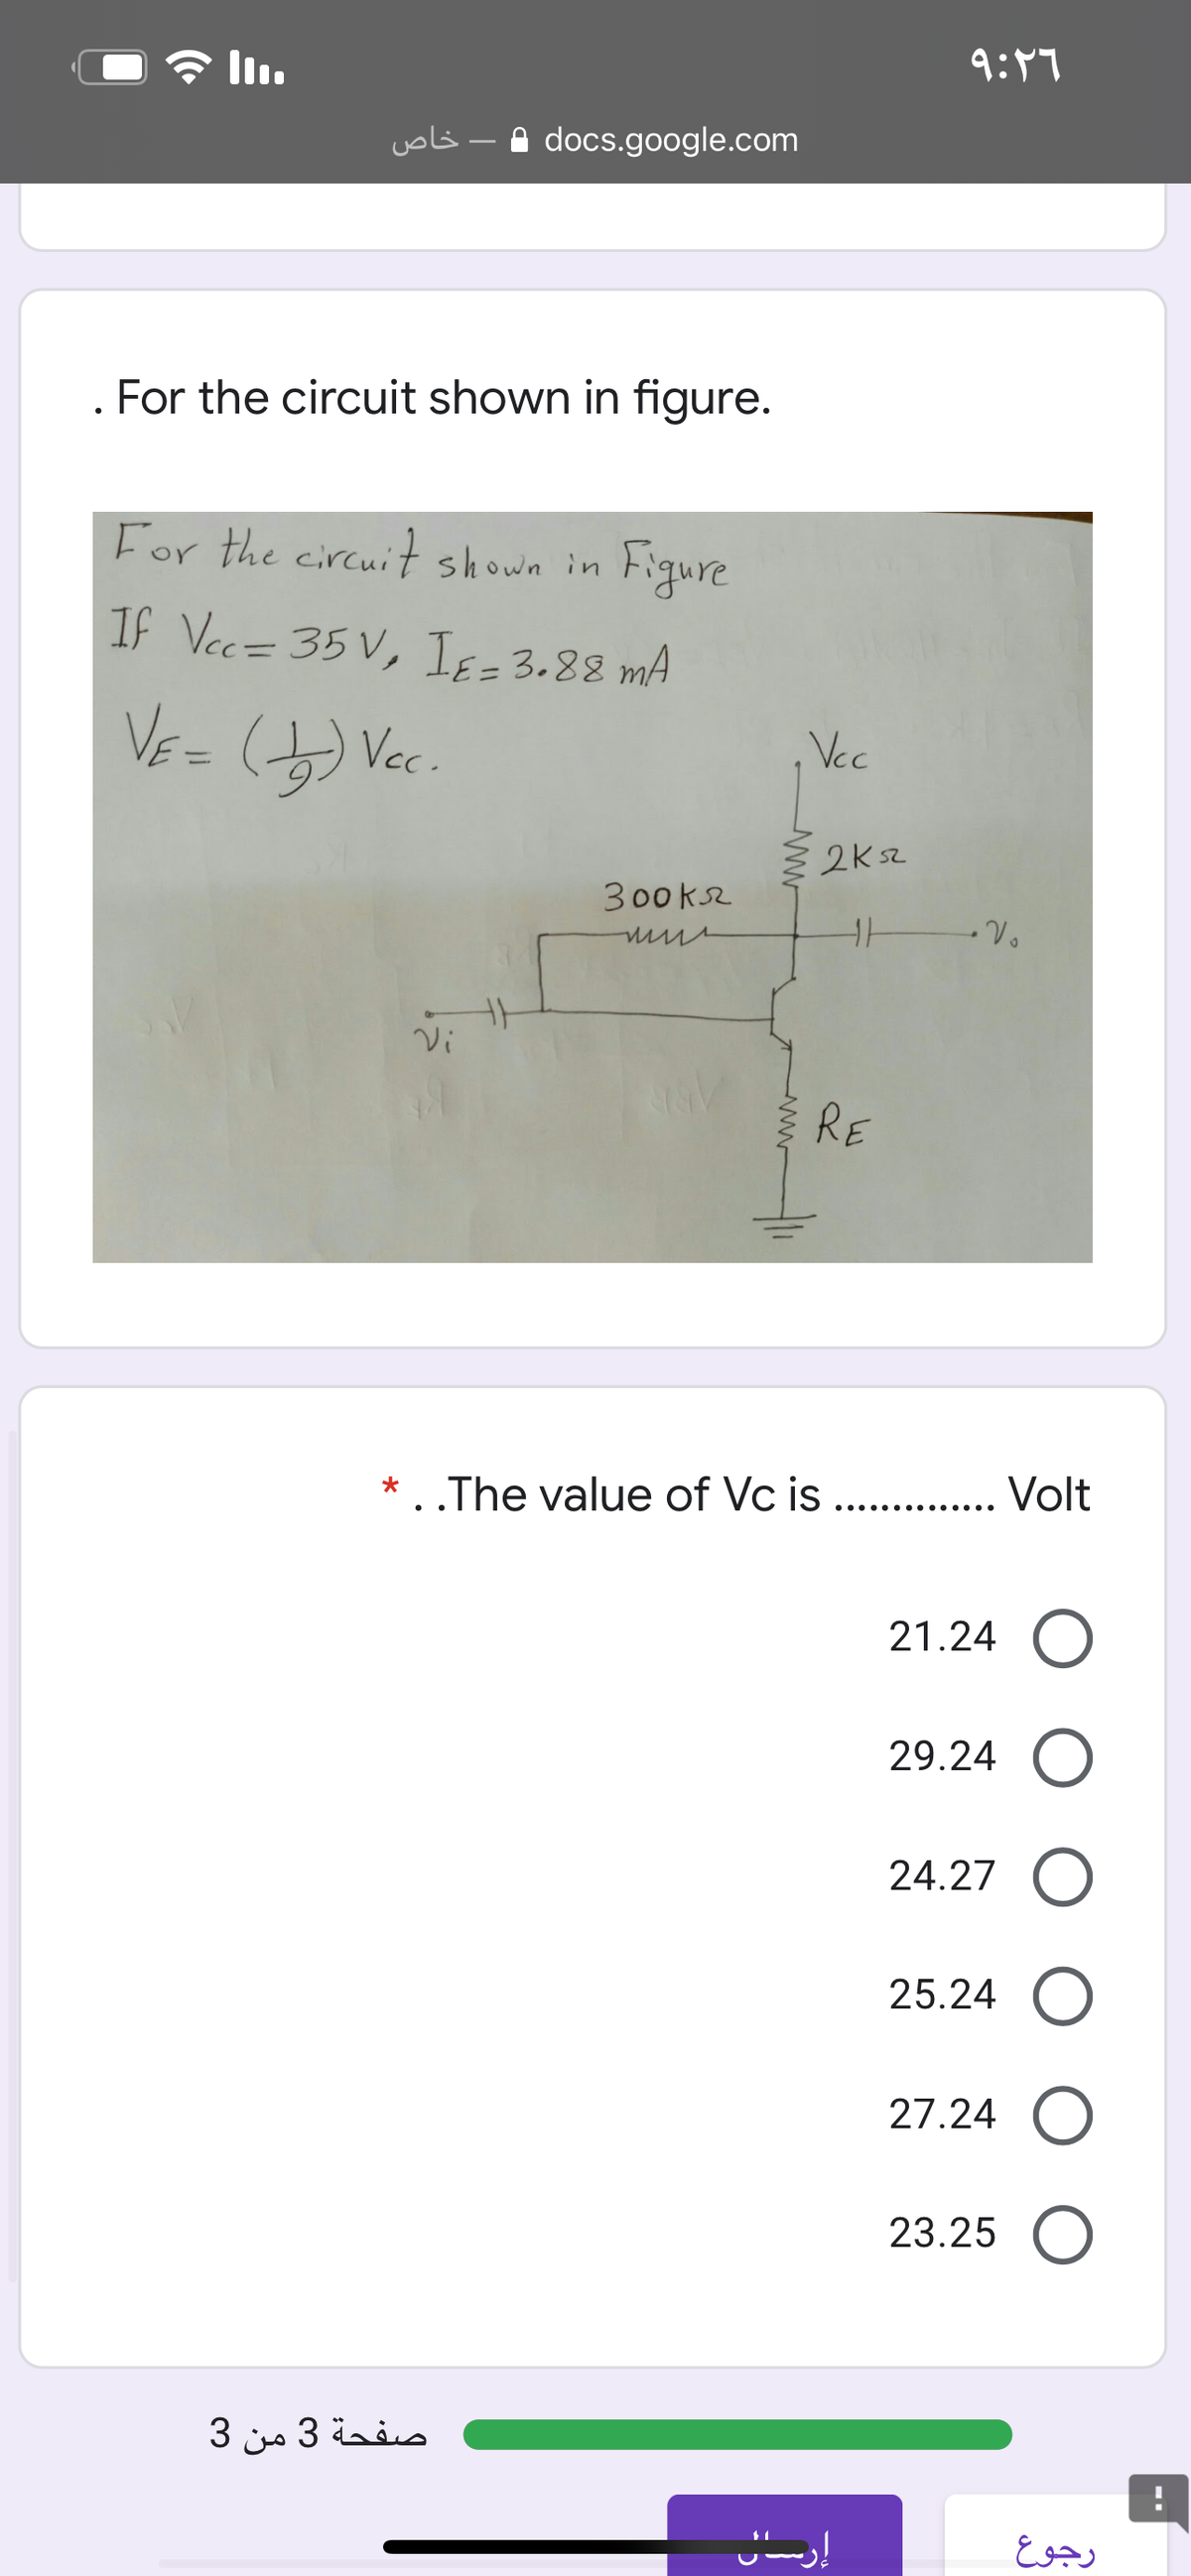 * l.
9:47
uols - A docs.google.com
. For the circuit shown in figure.
For the circuit shown in
Figure
If Vec= 35 V, Iɛ = 3.88 mA
VE=
Vc.
Vcc
%3D
2K52
300ks2
Vi
RE
* . .The value of Vc is . . Volt
.... .... ....
21.24 O
29.24 O
24.27
25.24 O
27.24 O
23.25 O
صفحة 3 من 3
رجوع
